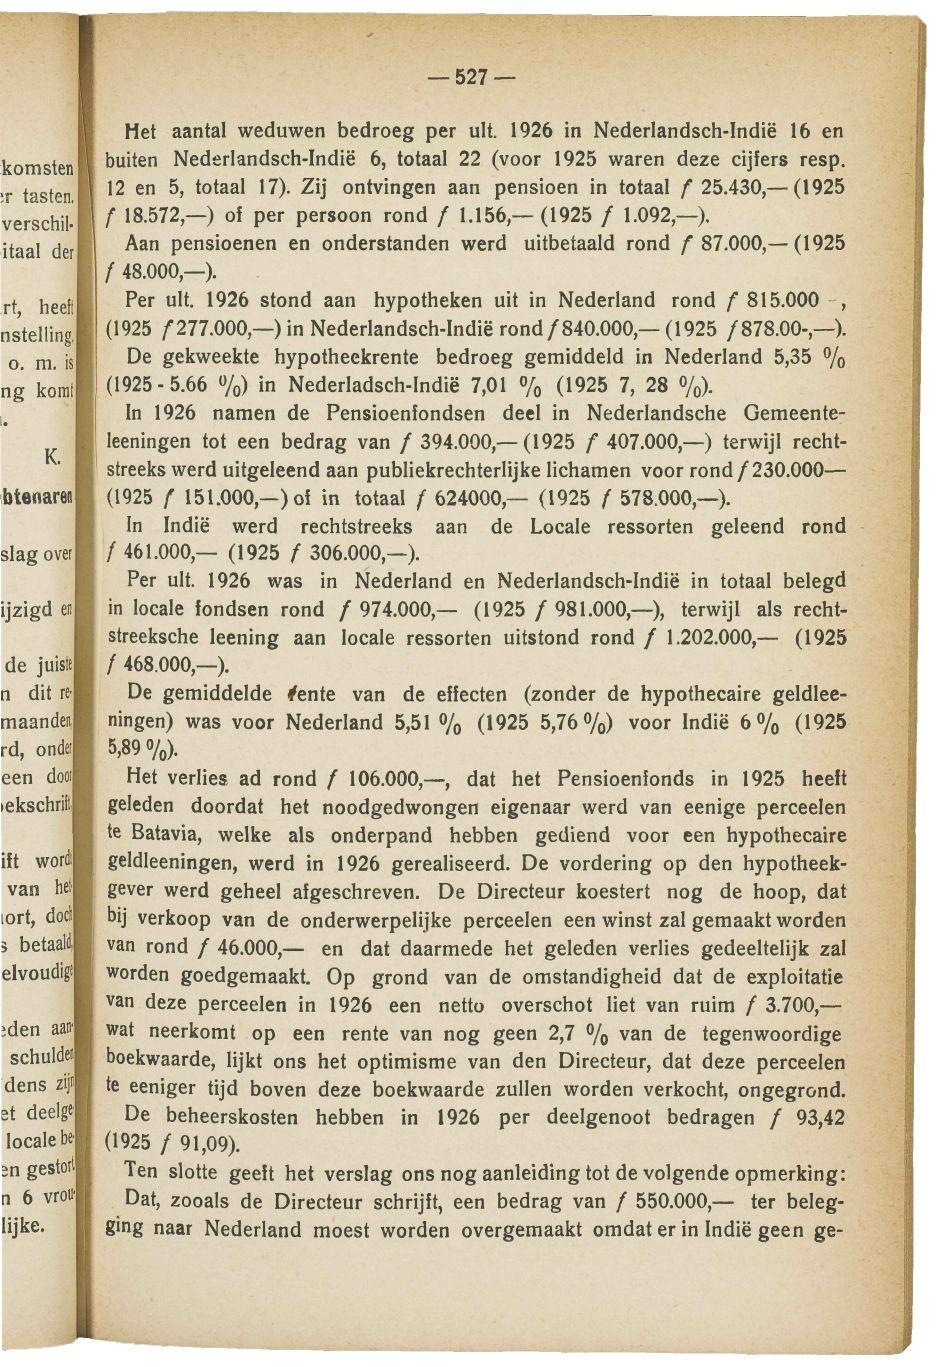 527 Het aantal weduwen bedroeg per uit. 1926 in Nederlandsch-Indië 16 en buiten Nederlandsch-Indië 6, totaal 22 (voor 1925 waren deze cijfers resp. 12 en 5, totaal 17).